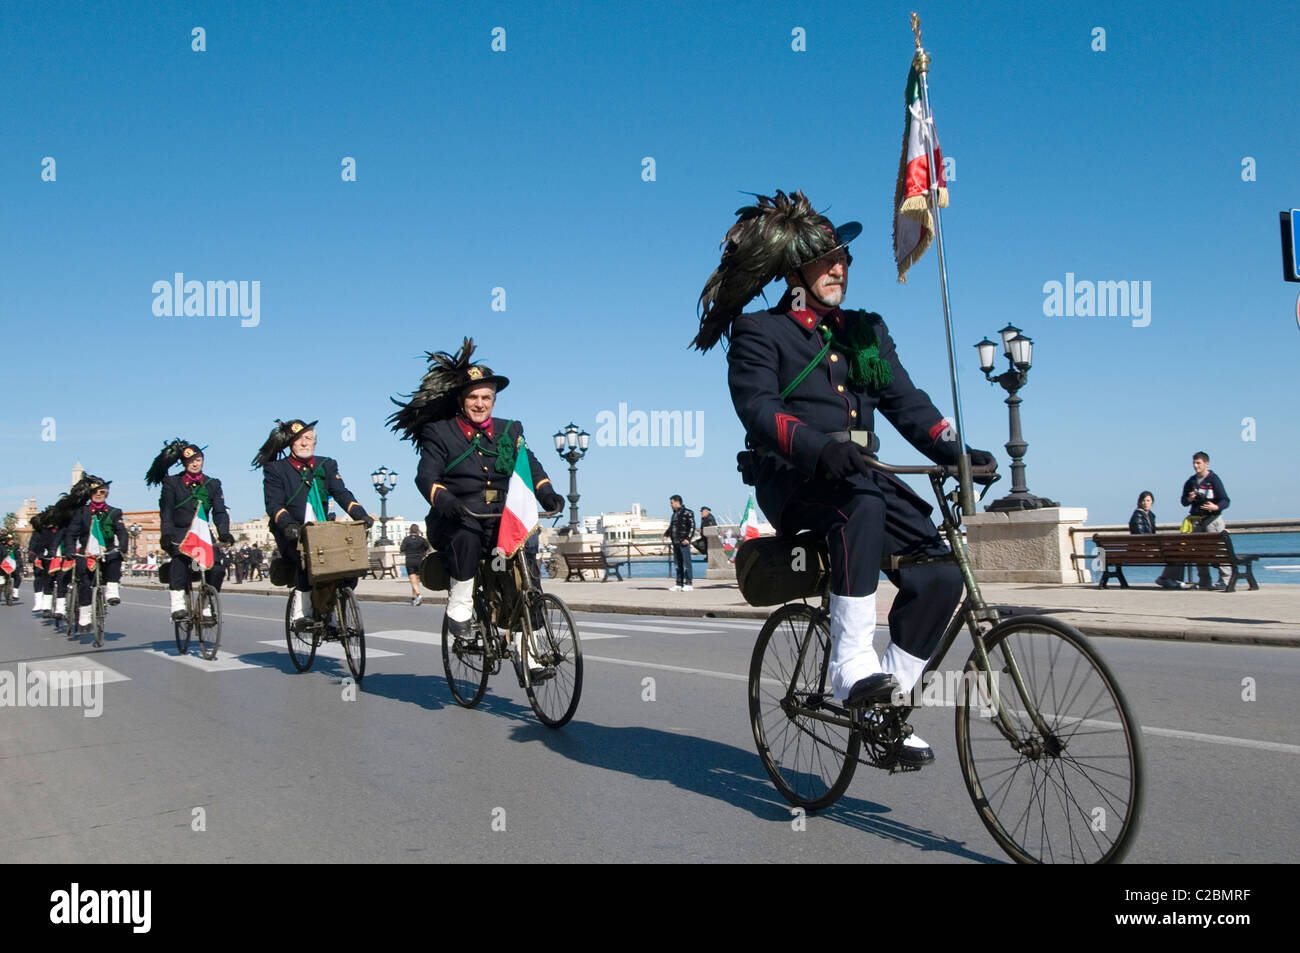 Bersaglieri italienische Armee Italien einheitliche Uniformen Federn in Hüte Hut auf Stil stilvoll cool Reiten Fahrräder Fahrrad Zyklen radeln Stockfoto